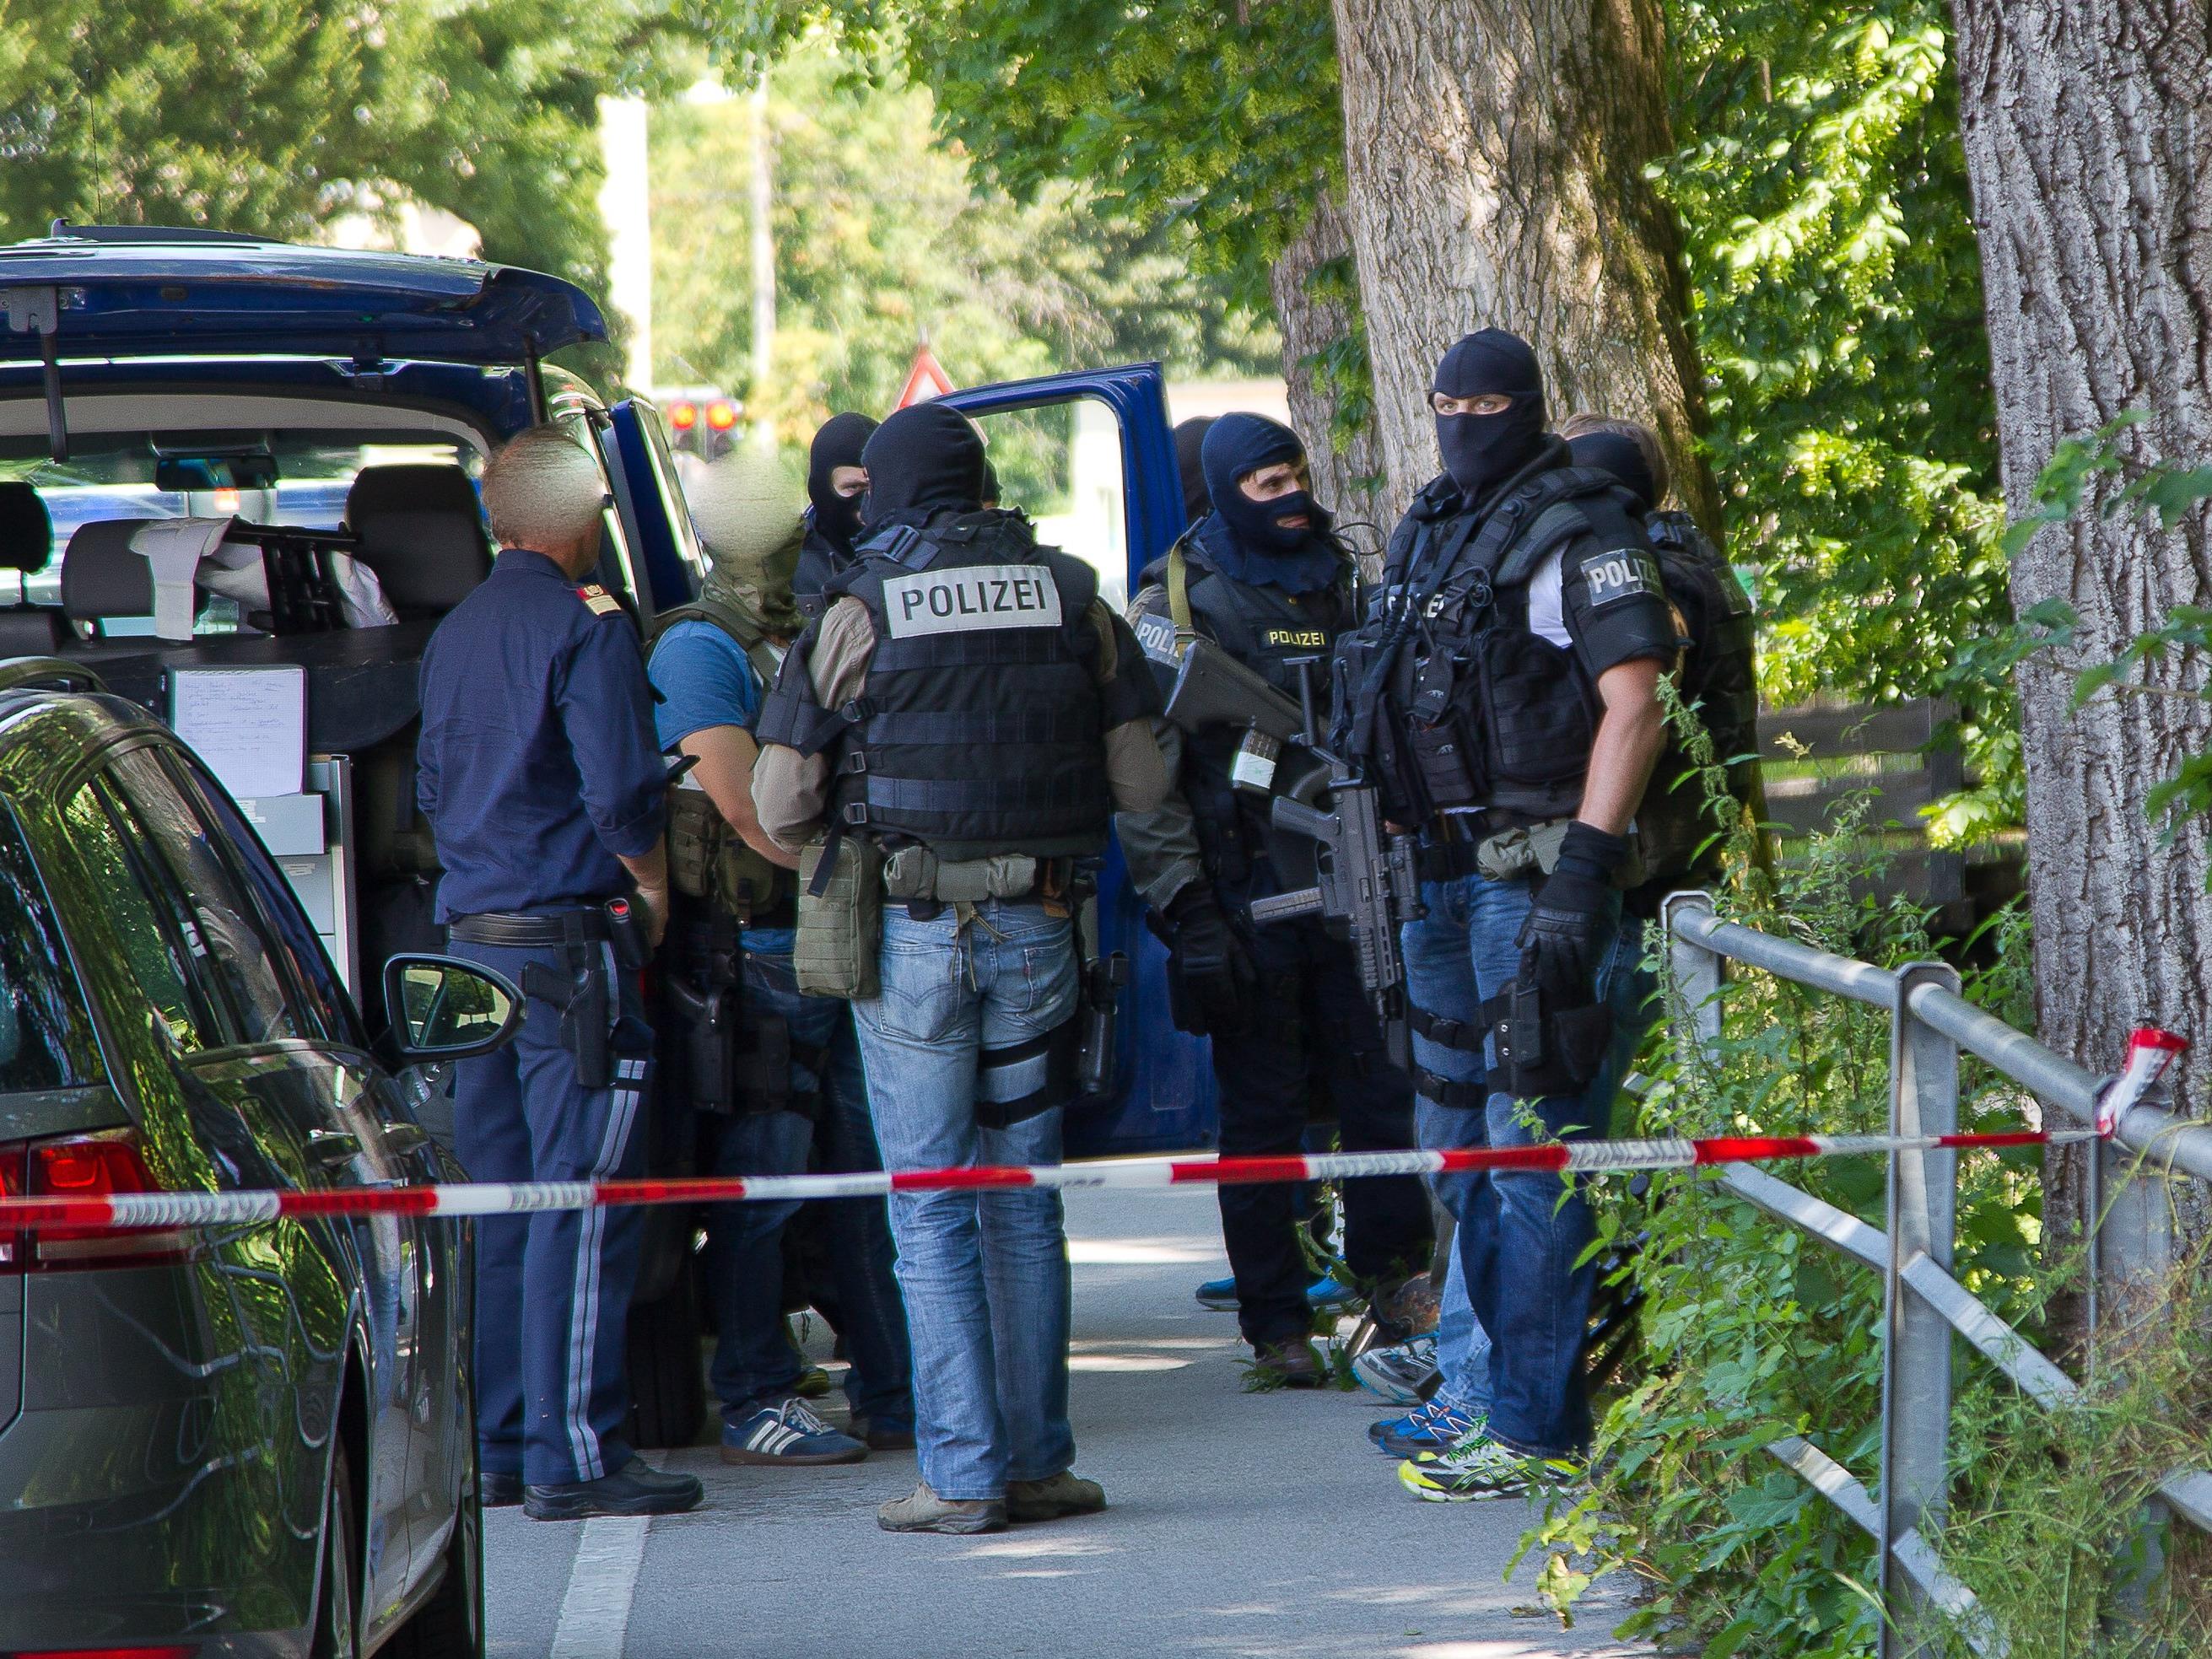 Cobra-Beamte und Schengenfahnder in Zivil richteten einen Sperrkreis ein und führten Personenkontrollen durch.